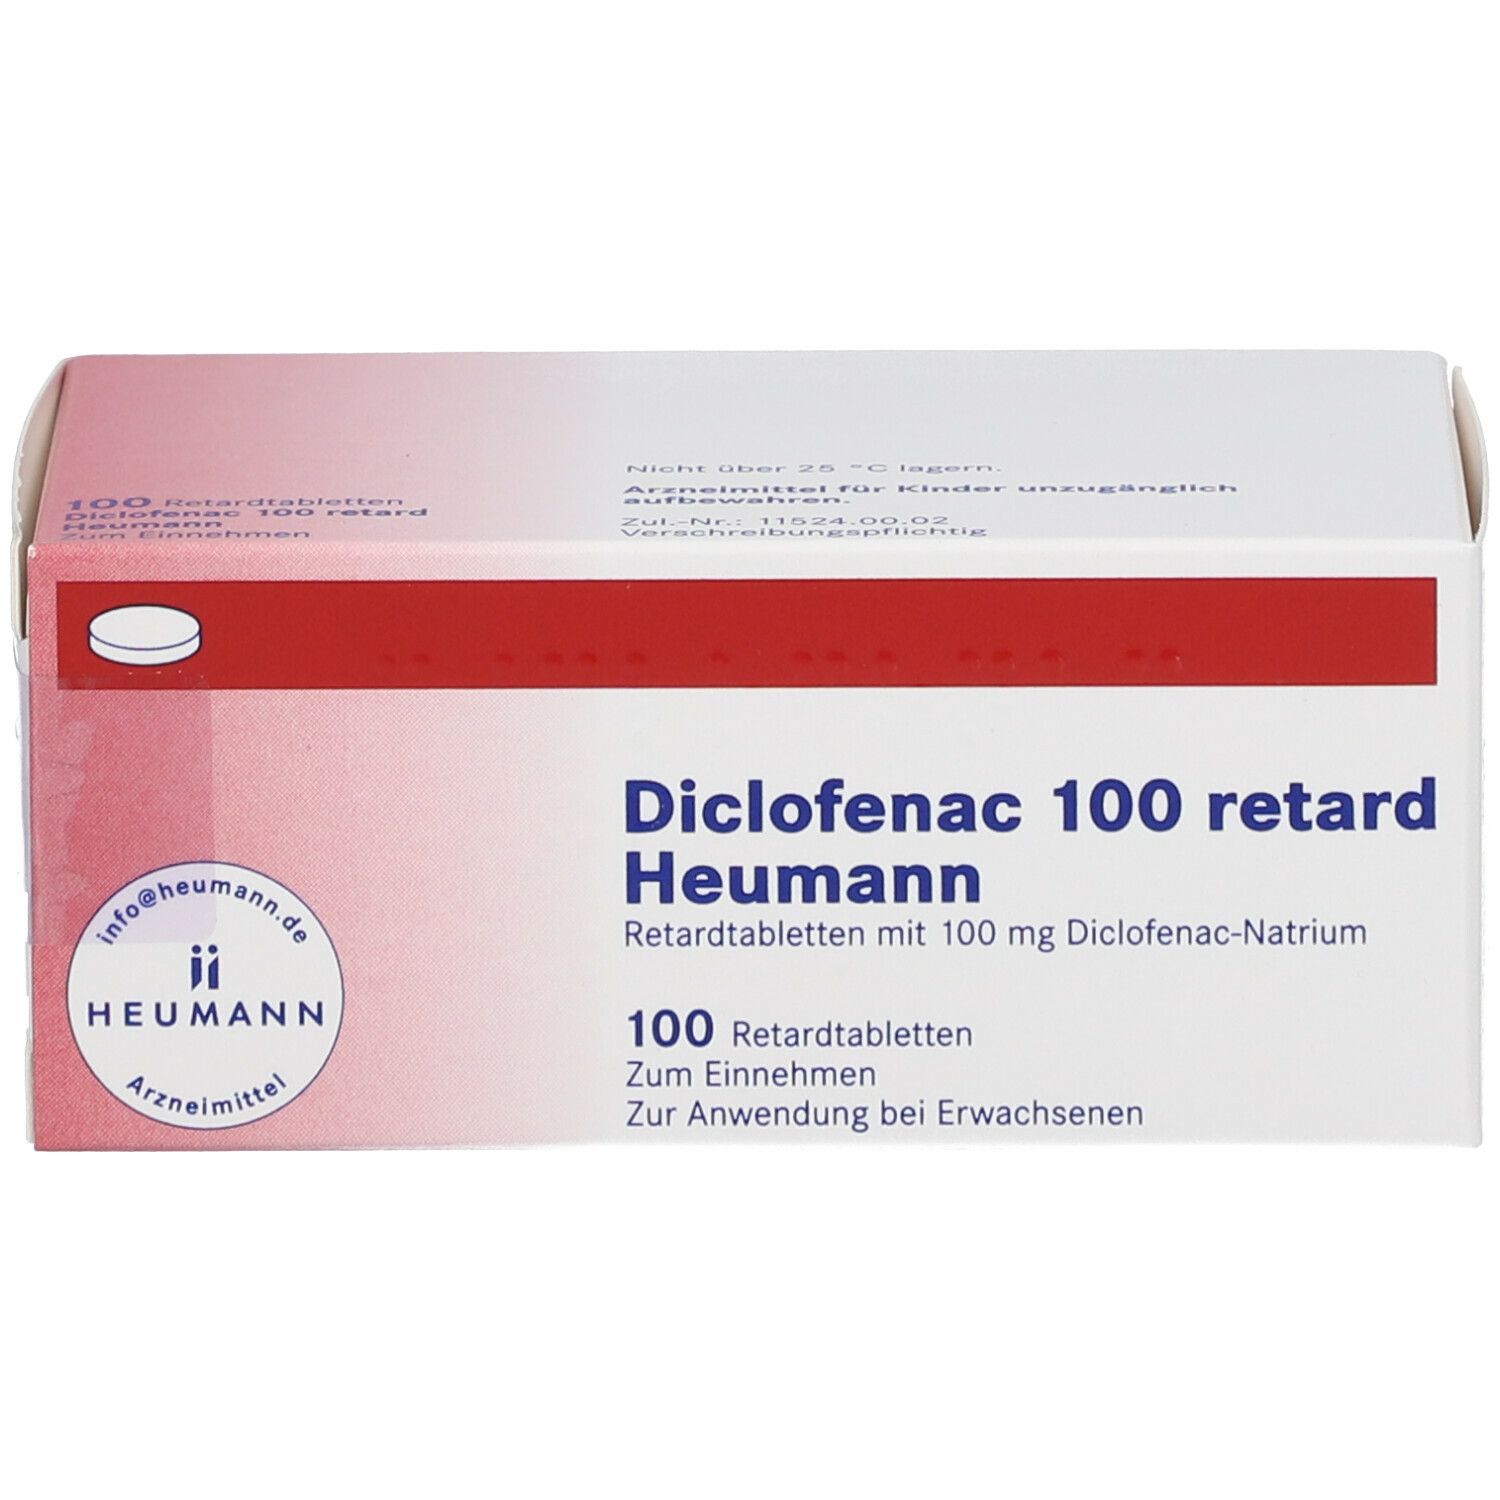 Diclofenac 100 retard Heumann